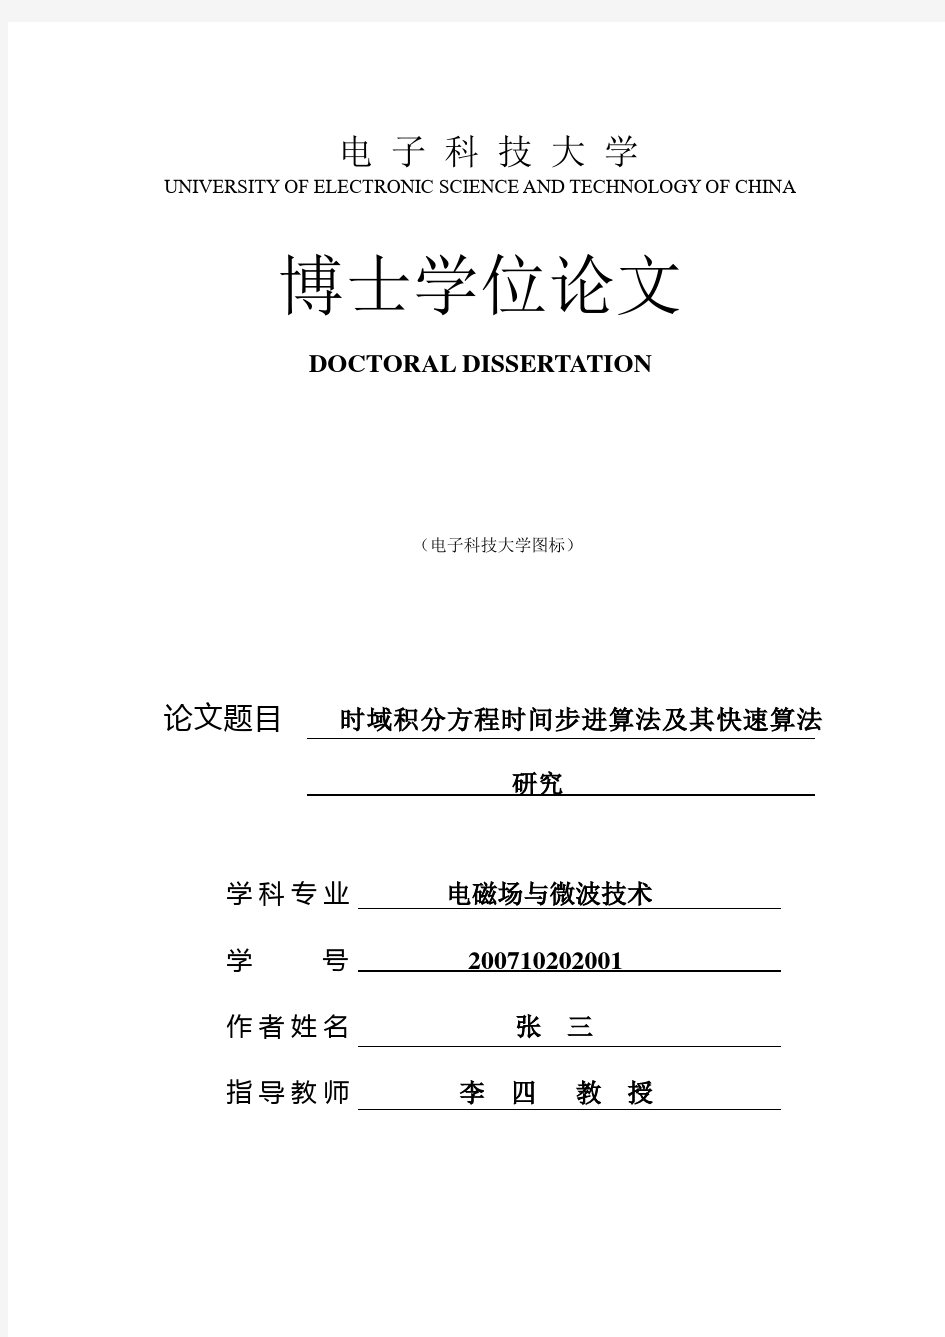 电子科技大学研究生学位论文(含研究报告)撰写范例(中文)